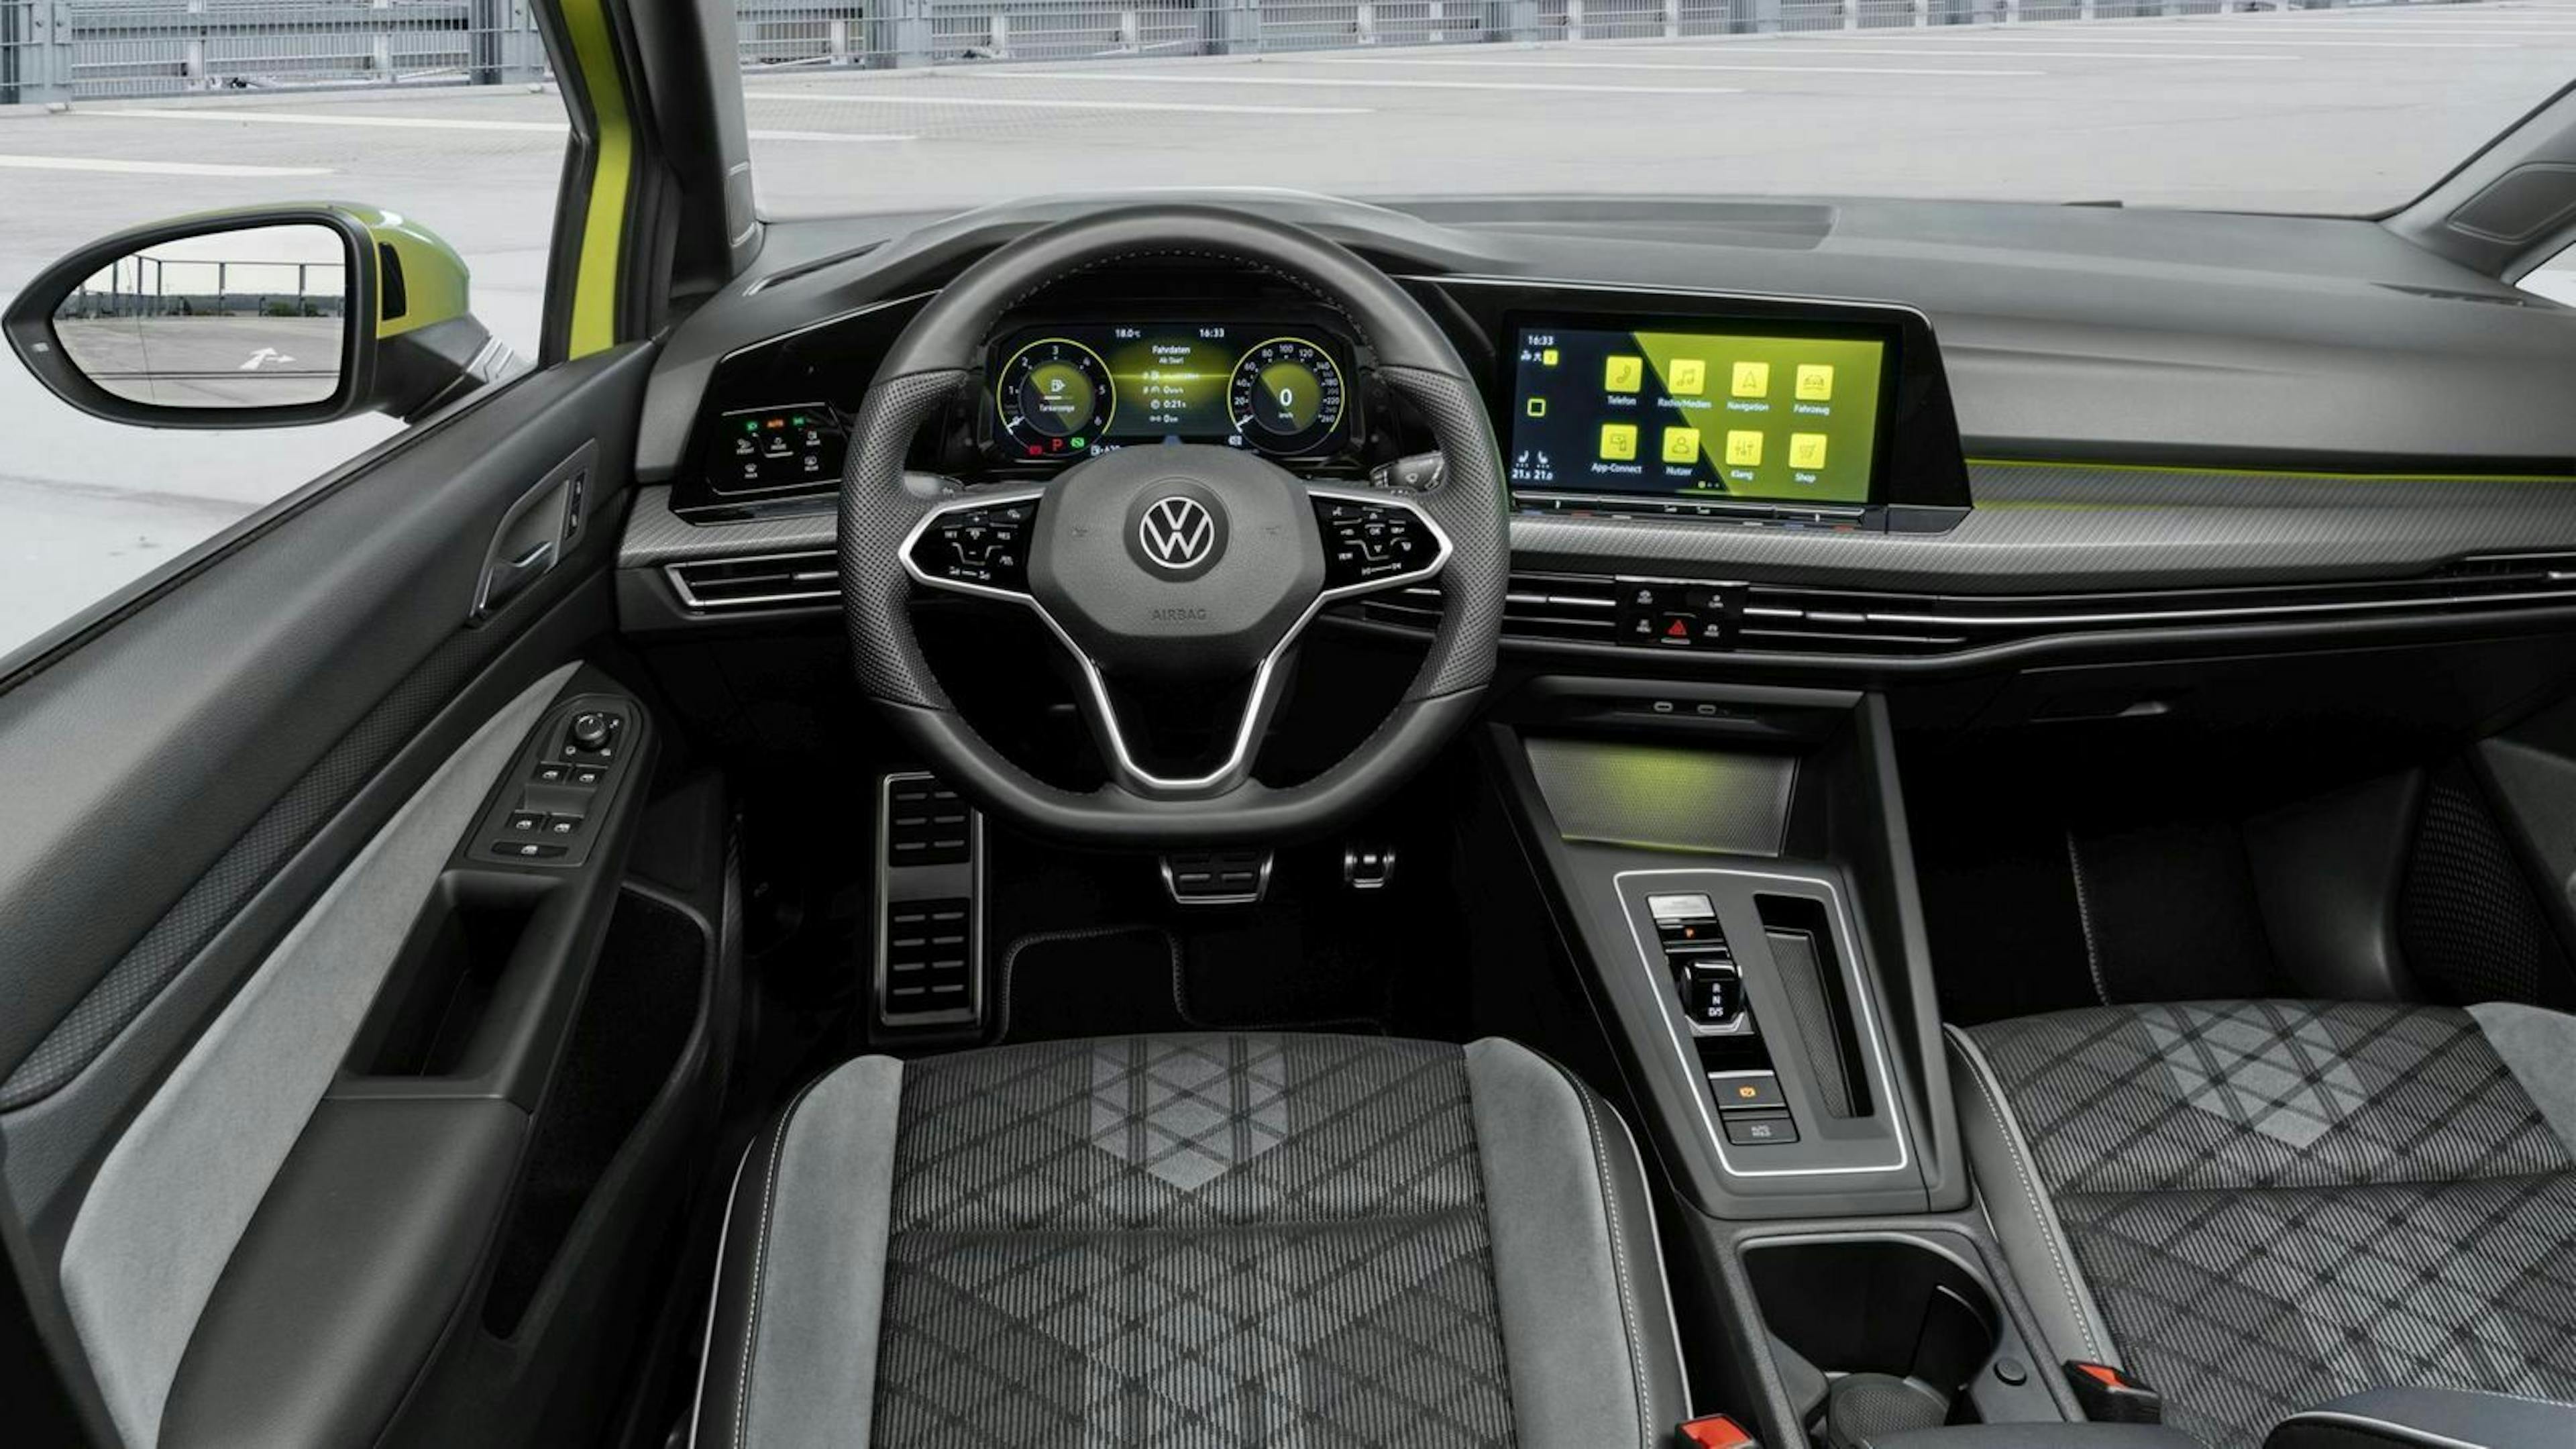 Zu sehen ist das Cockpit des VW Golf 8 Variant